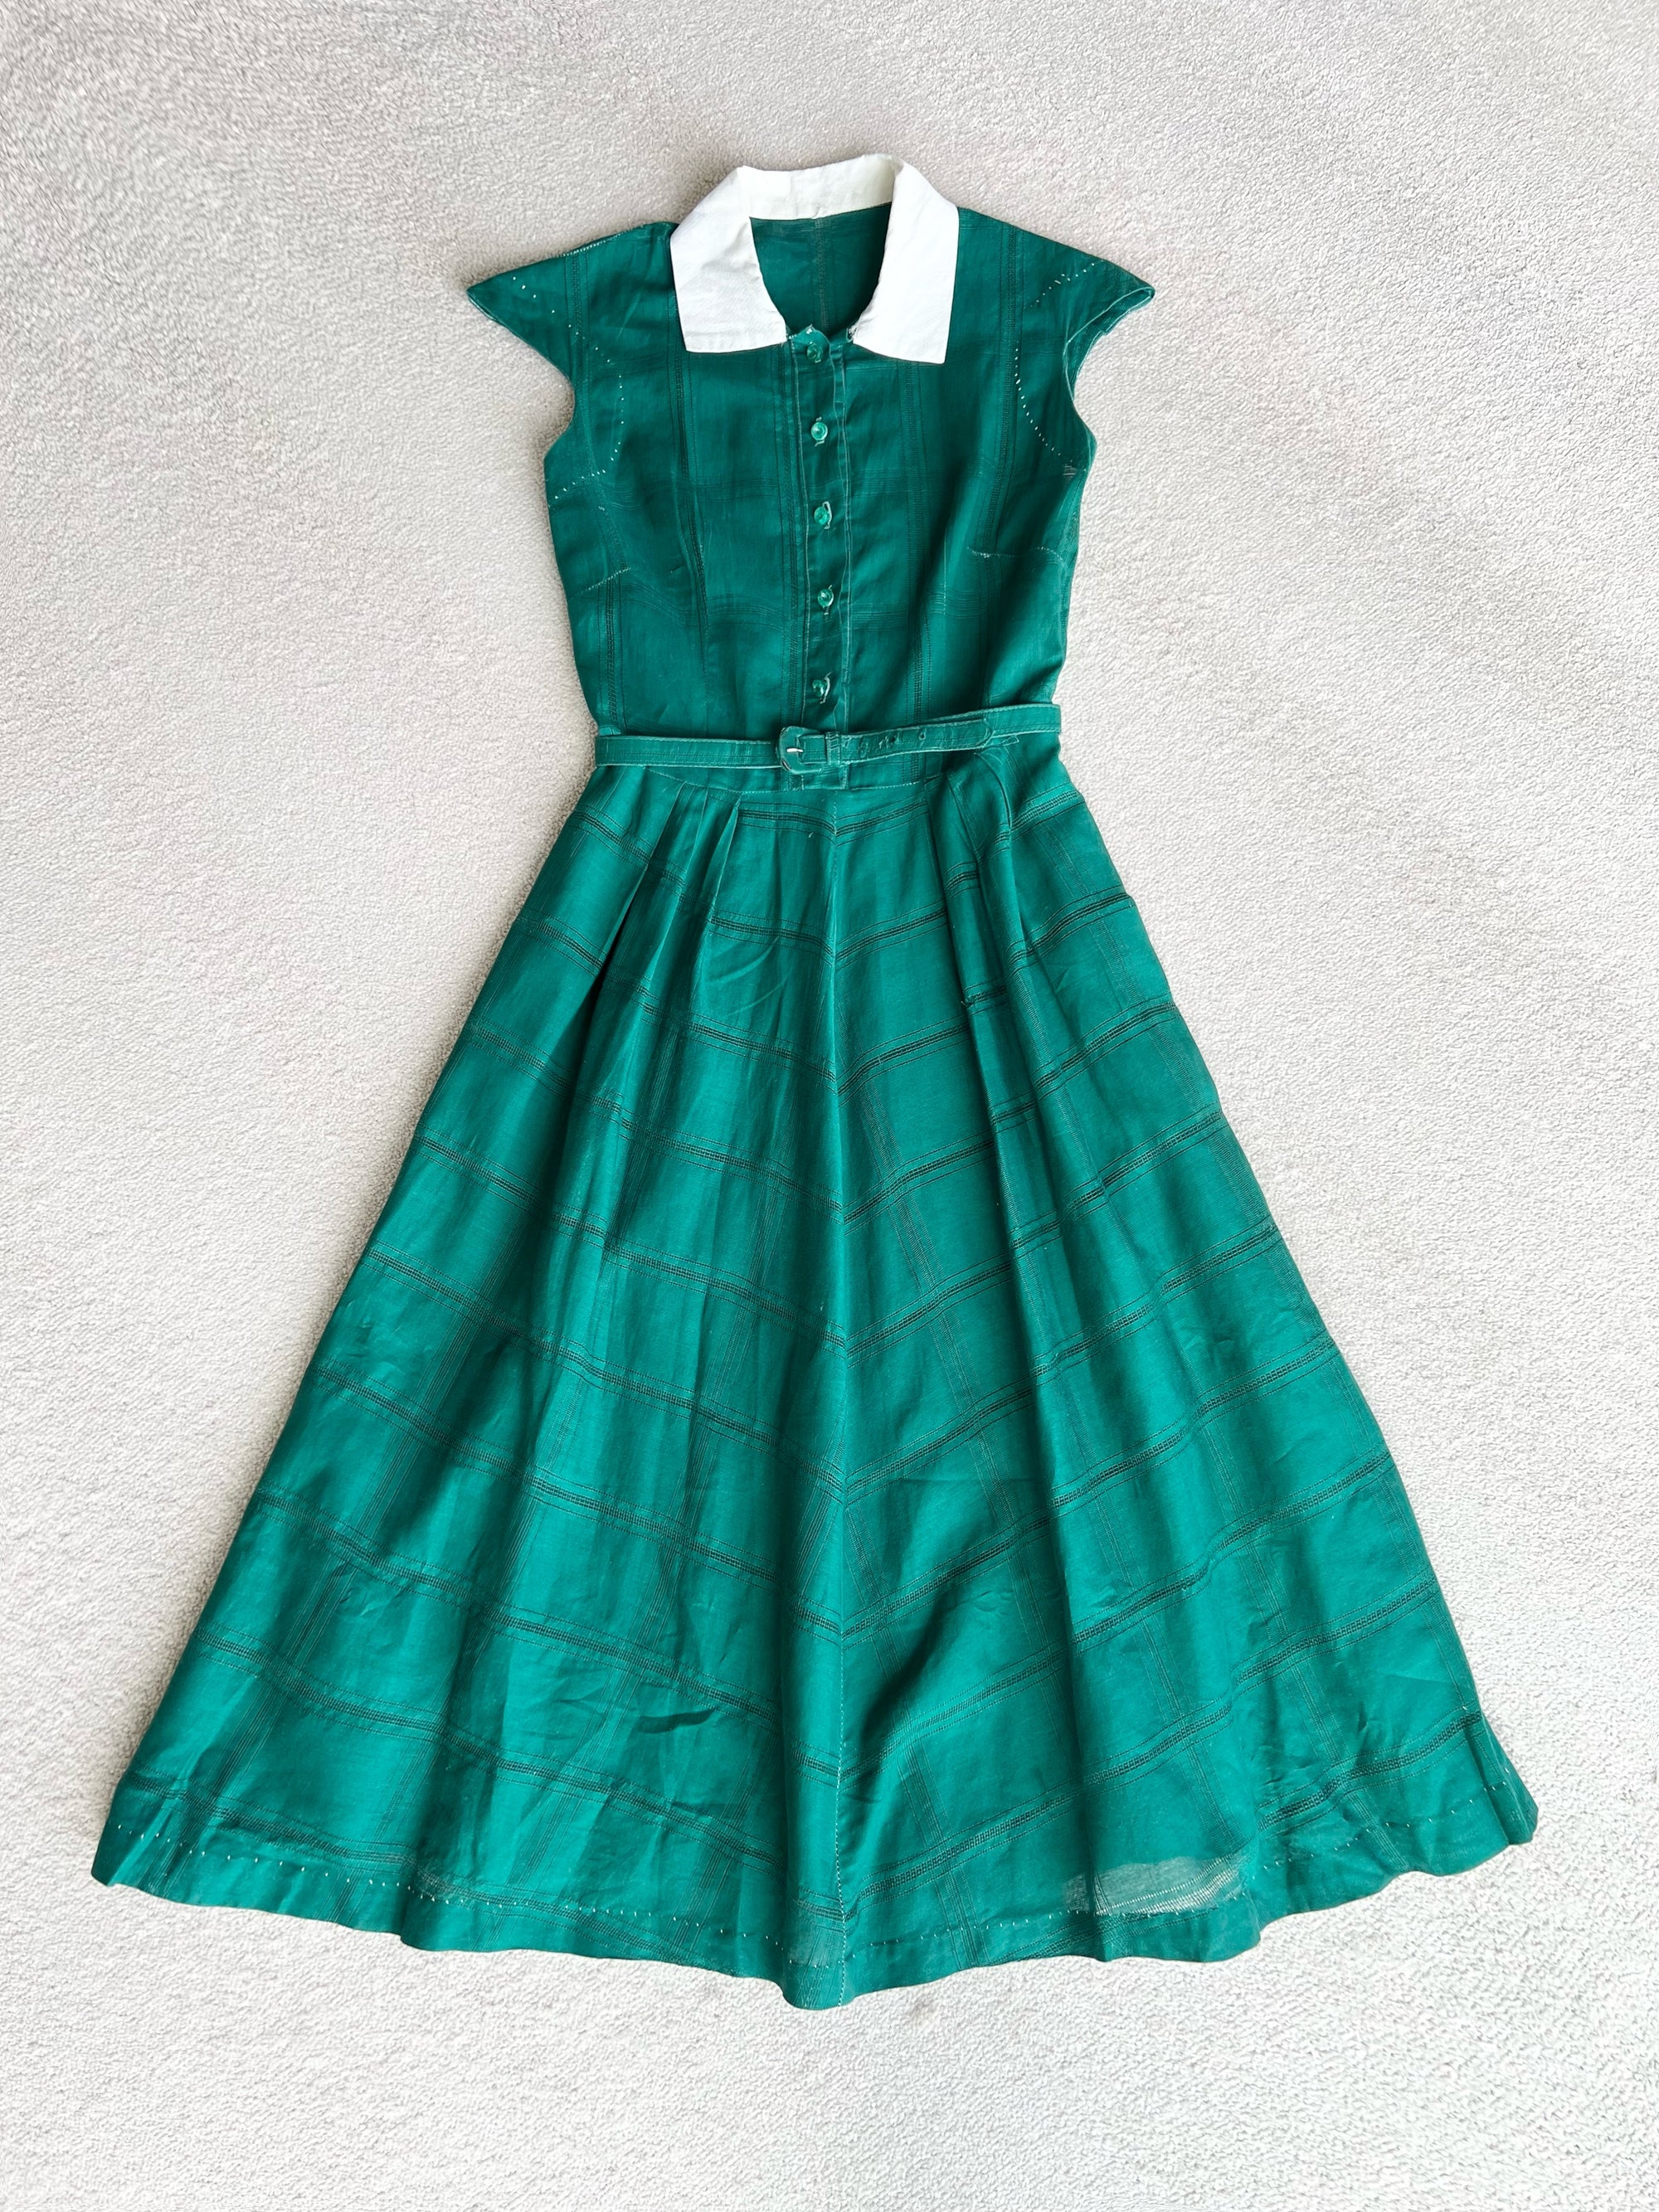 1940s 40s Fabulous Green Dress with Matching Belt / Medium